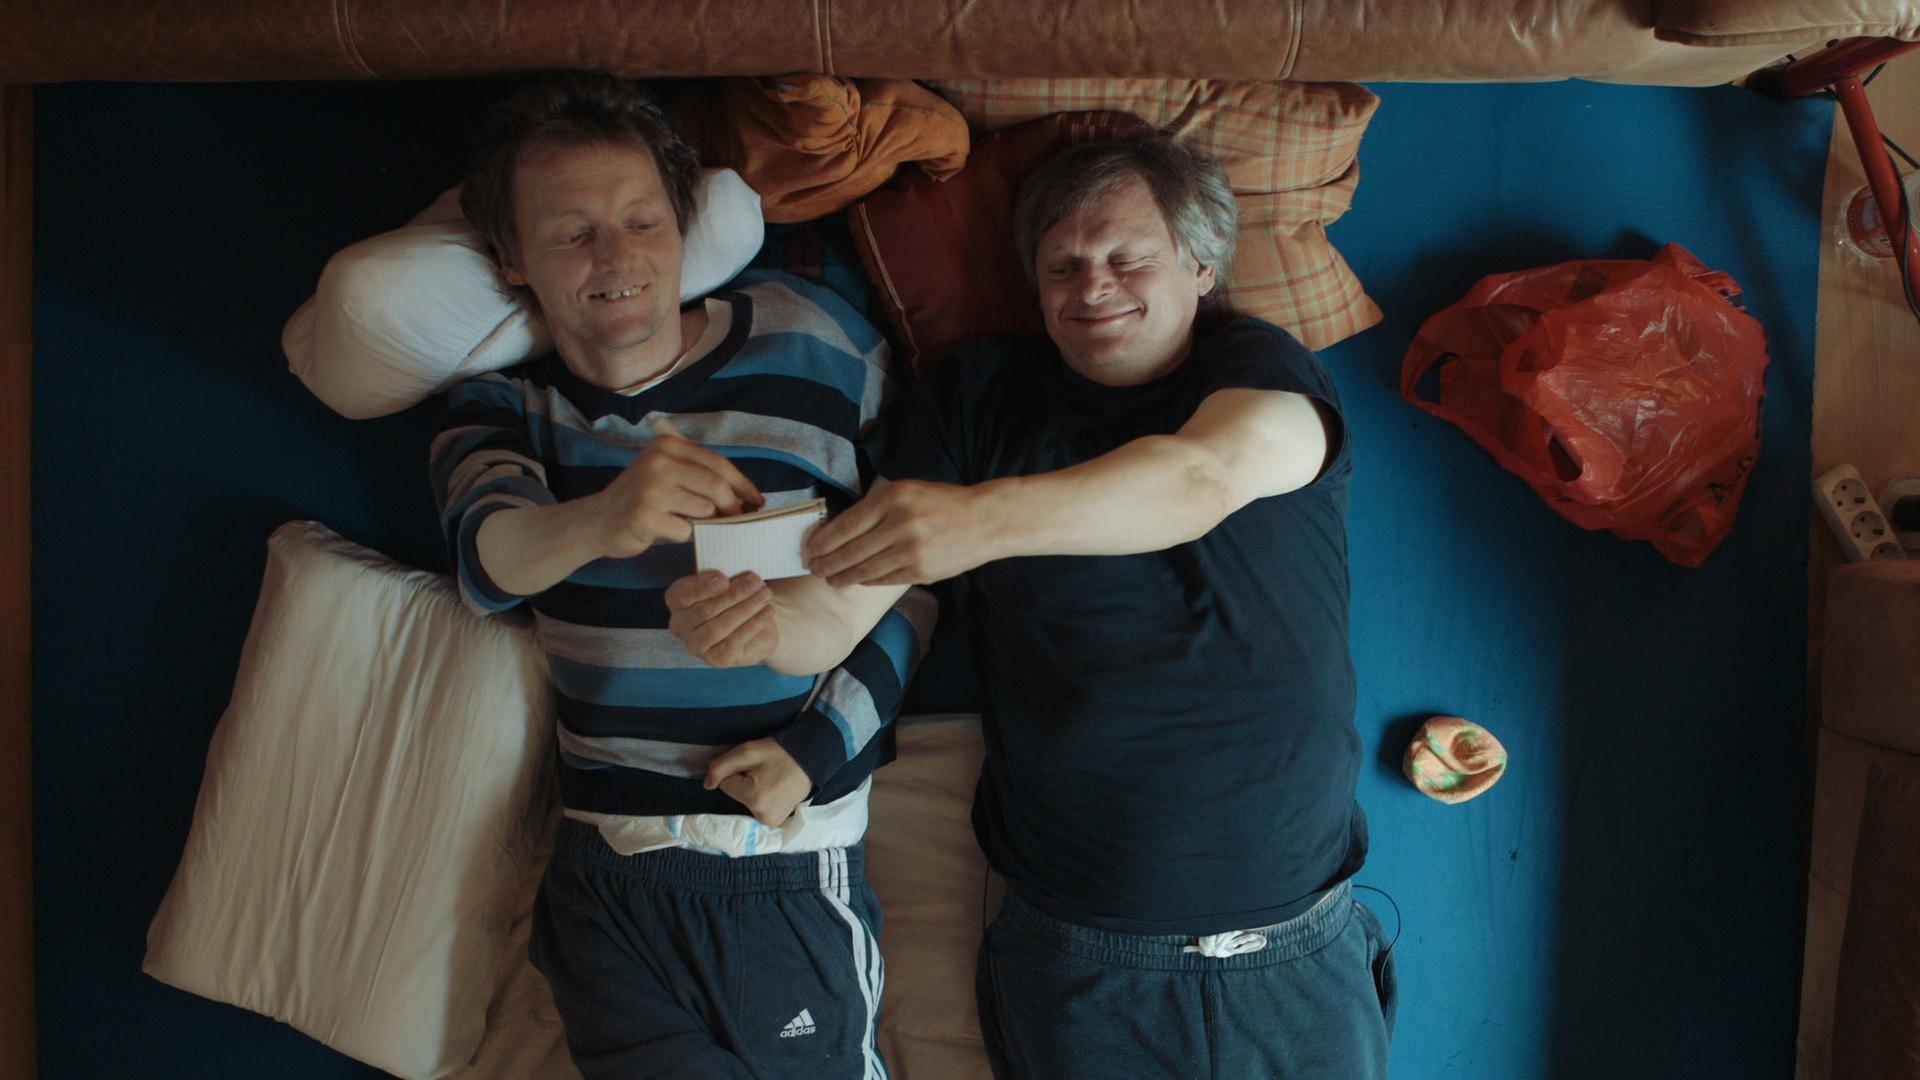 Filmszene aus Bruderliebe: Markus und Michael liegen nebeneinander vergnügt im Bett.